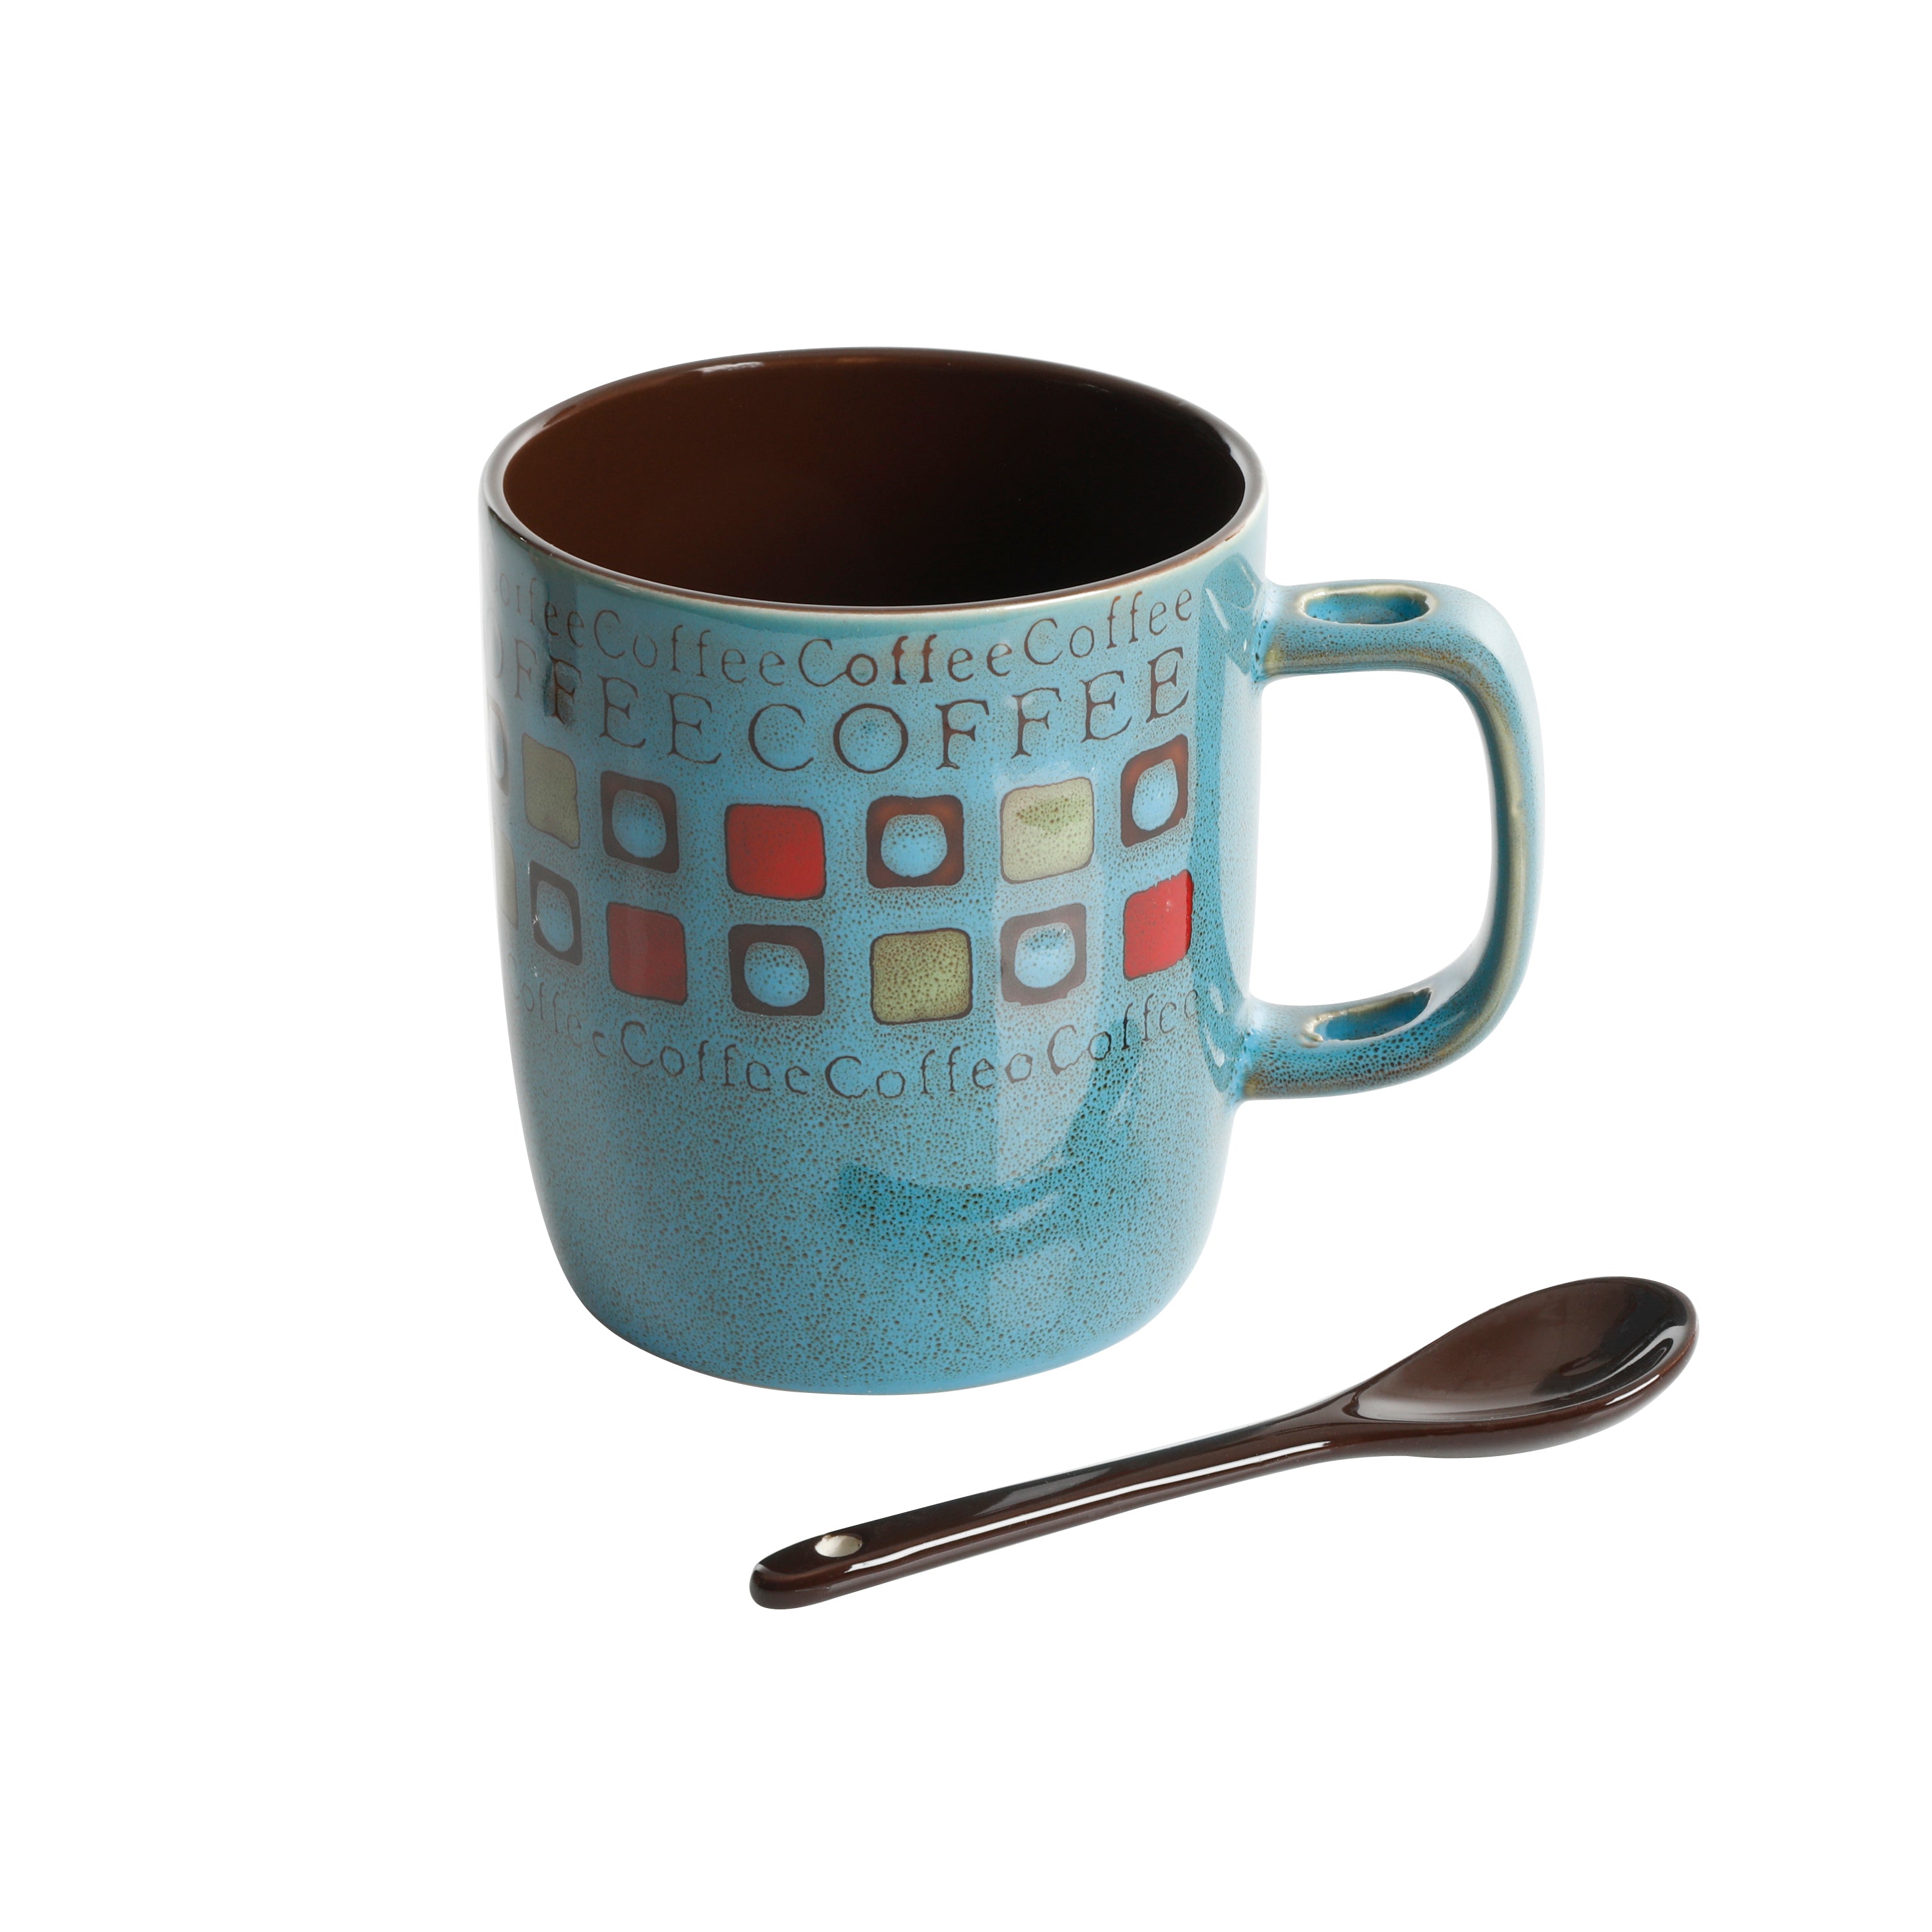 Mr Coffee Cafe Americano Mug Set